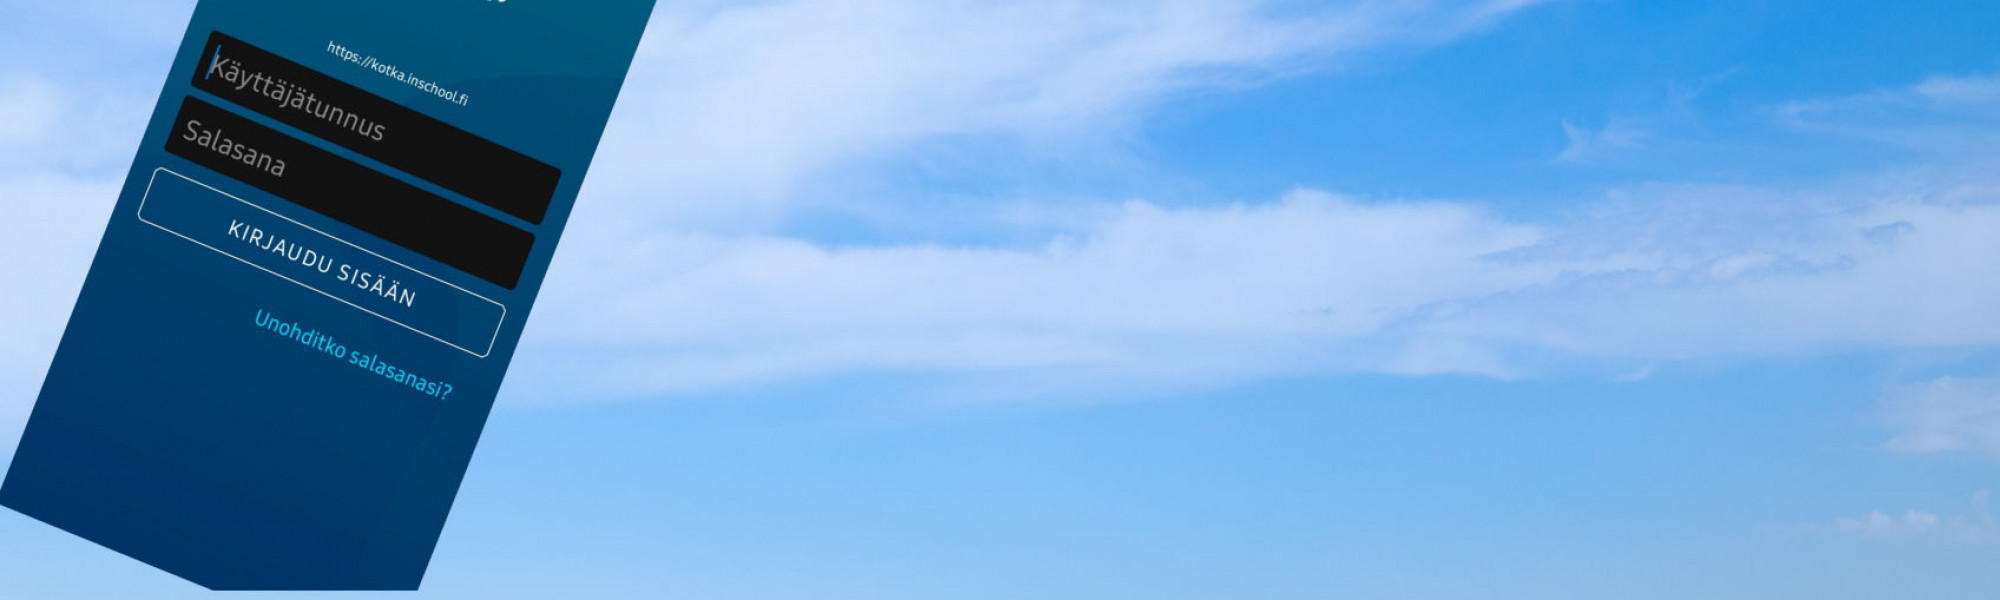 Wilmaan kirjautumisen näkymä puhelimesta taustalla sininen taivas jossa valkoisia pilviä